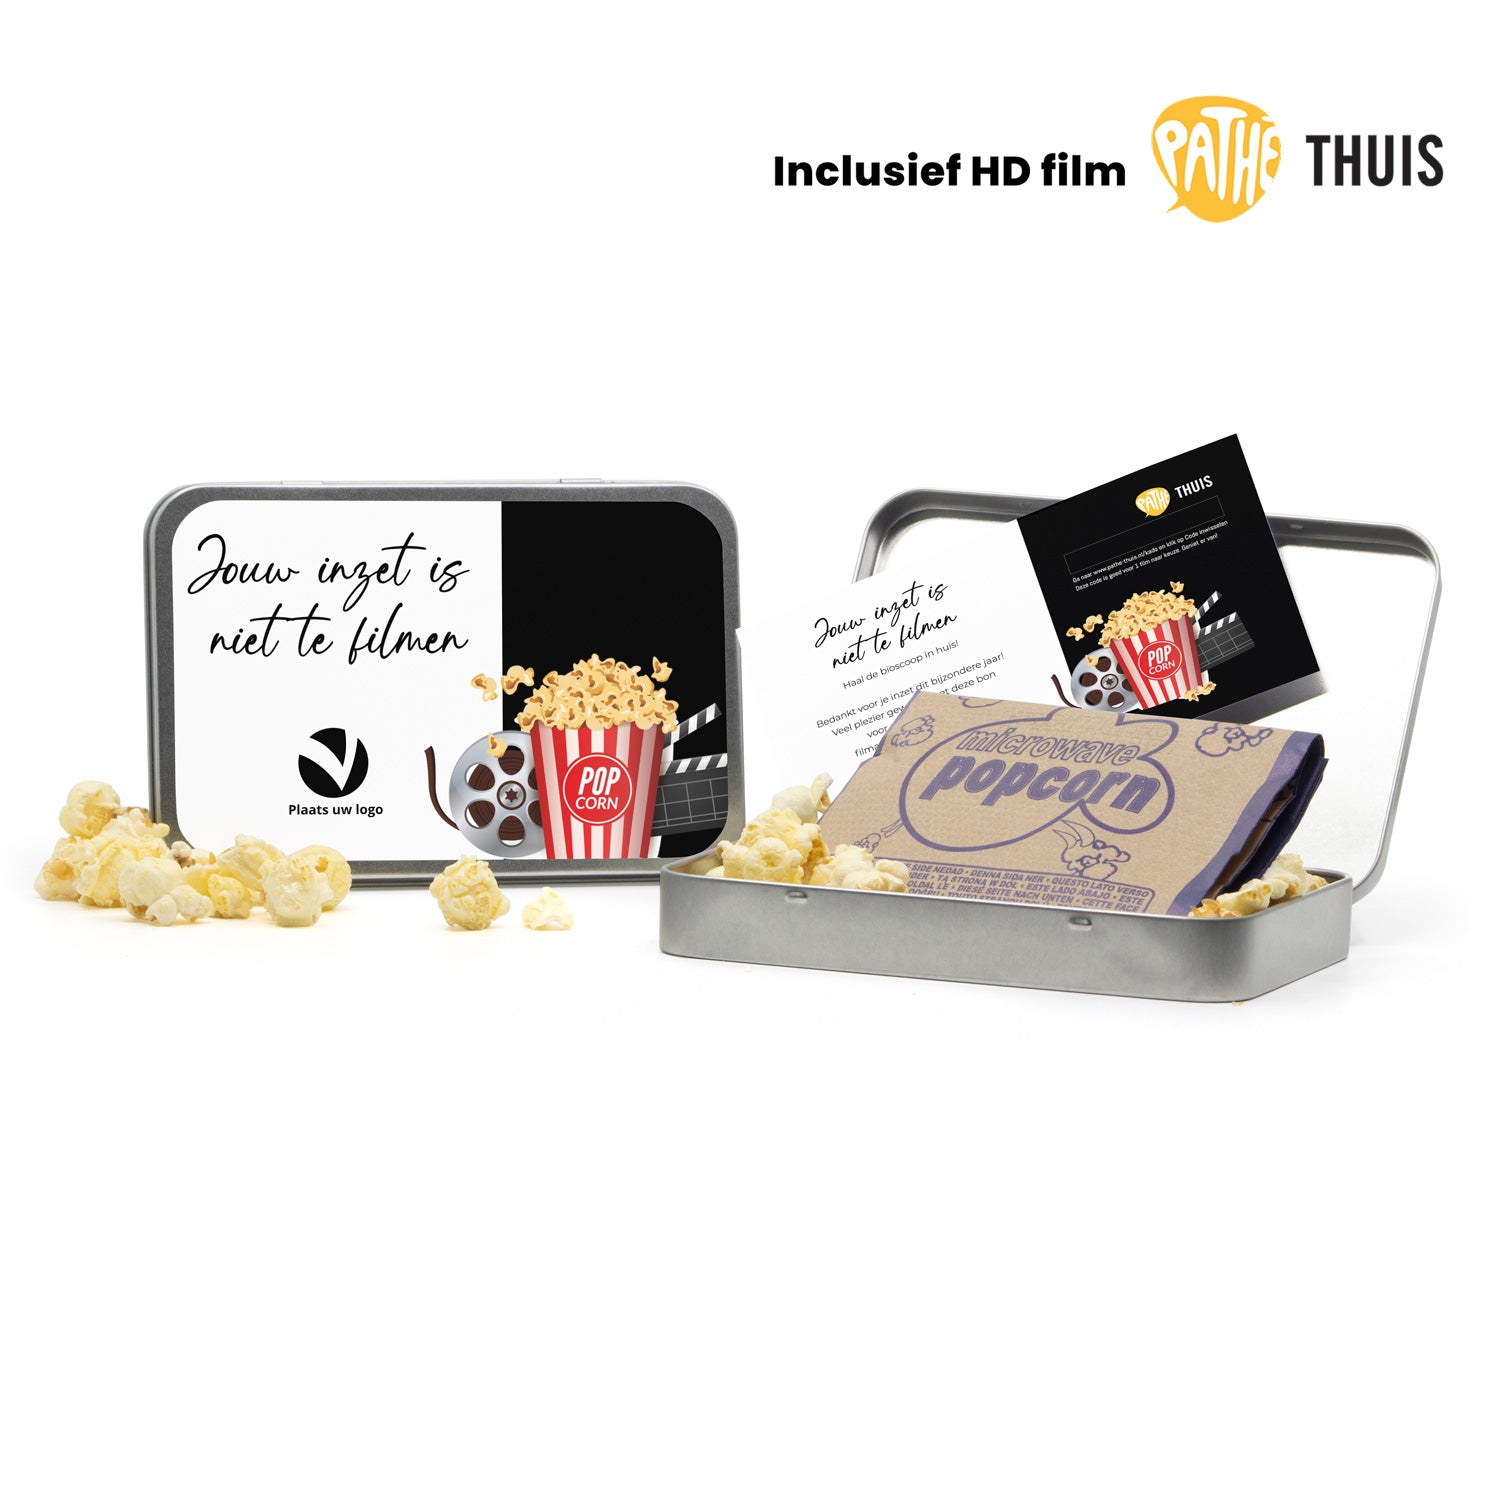 Filmblik met Pathé Thuis code en Jimmy's popcorn - Bedankjes.nl